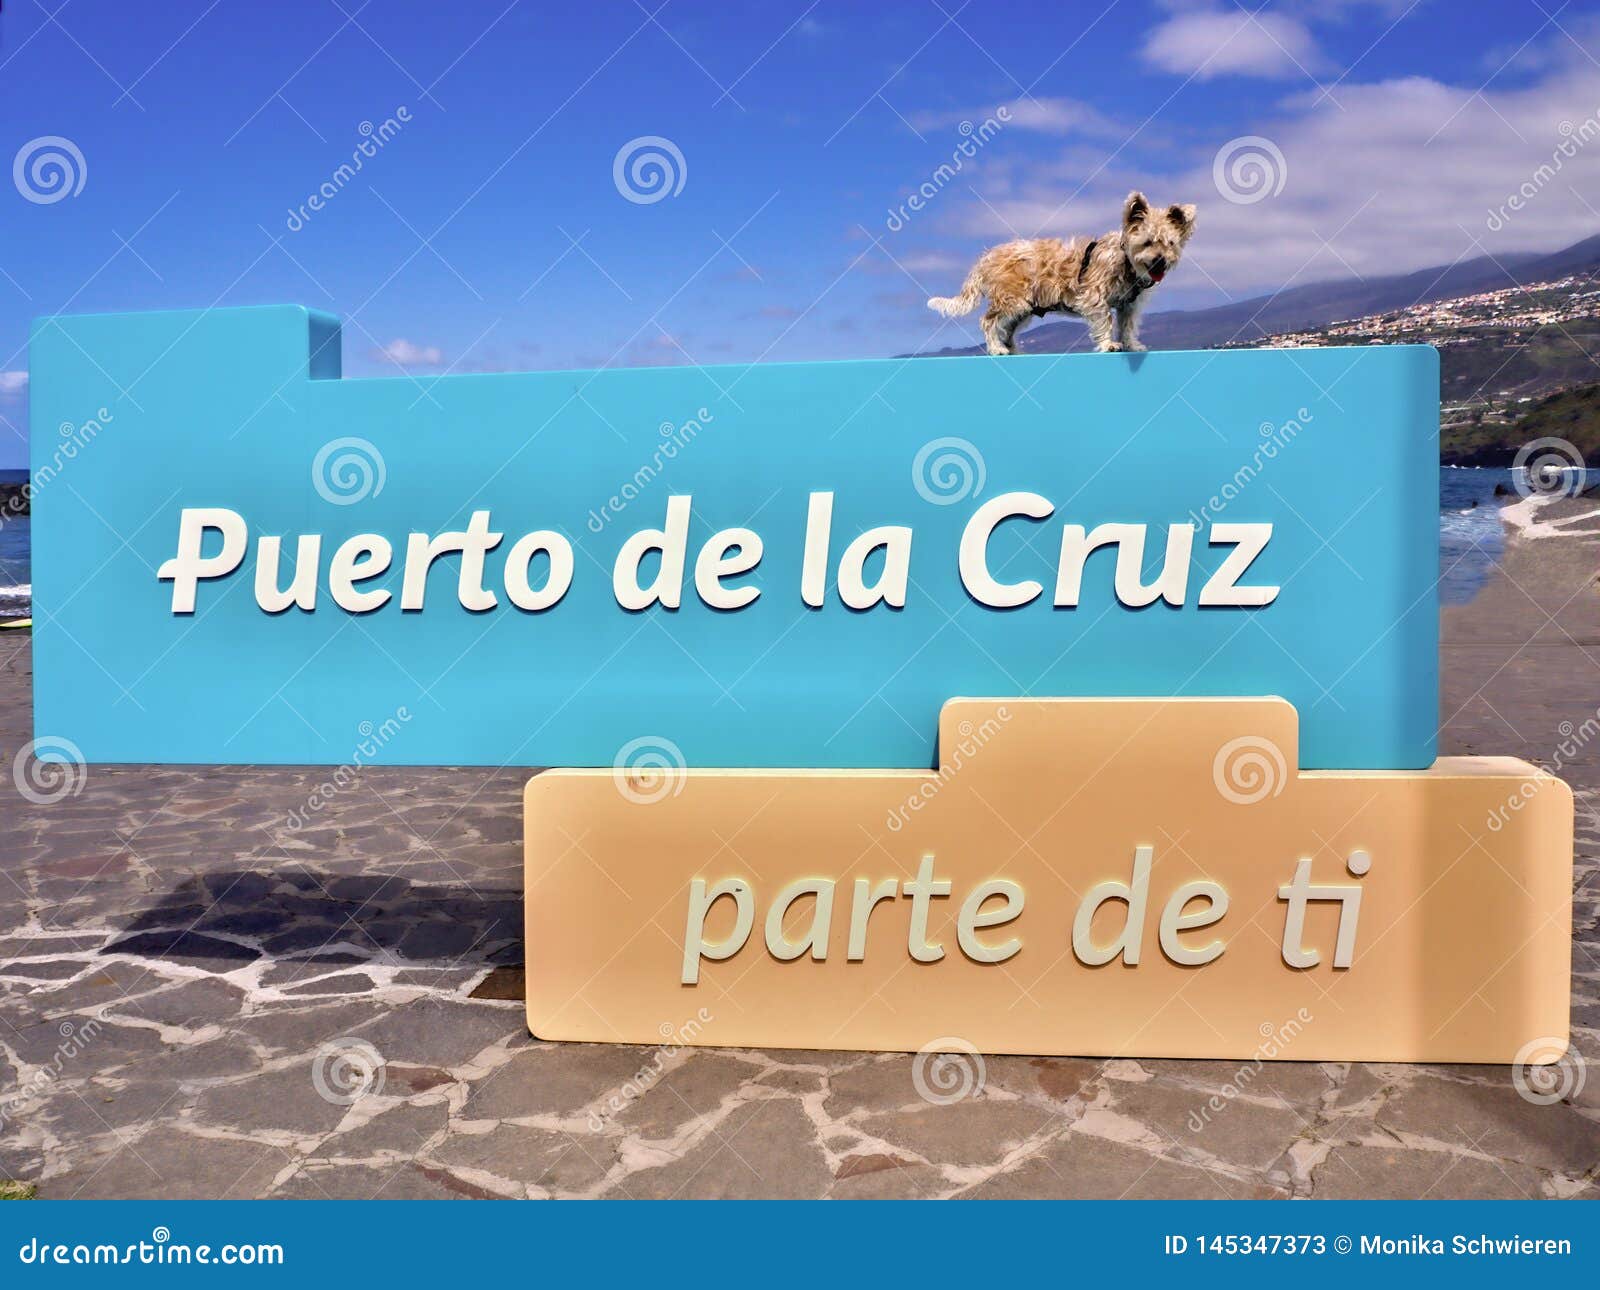 puerto de la cruz parte de ti a part of you slogan with a little dog above